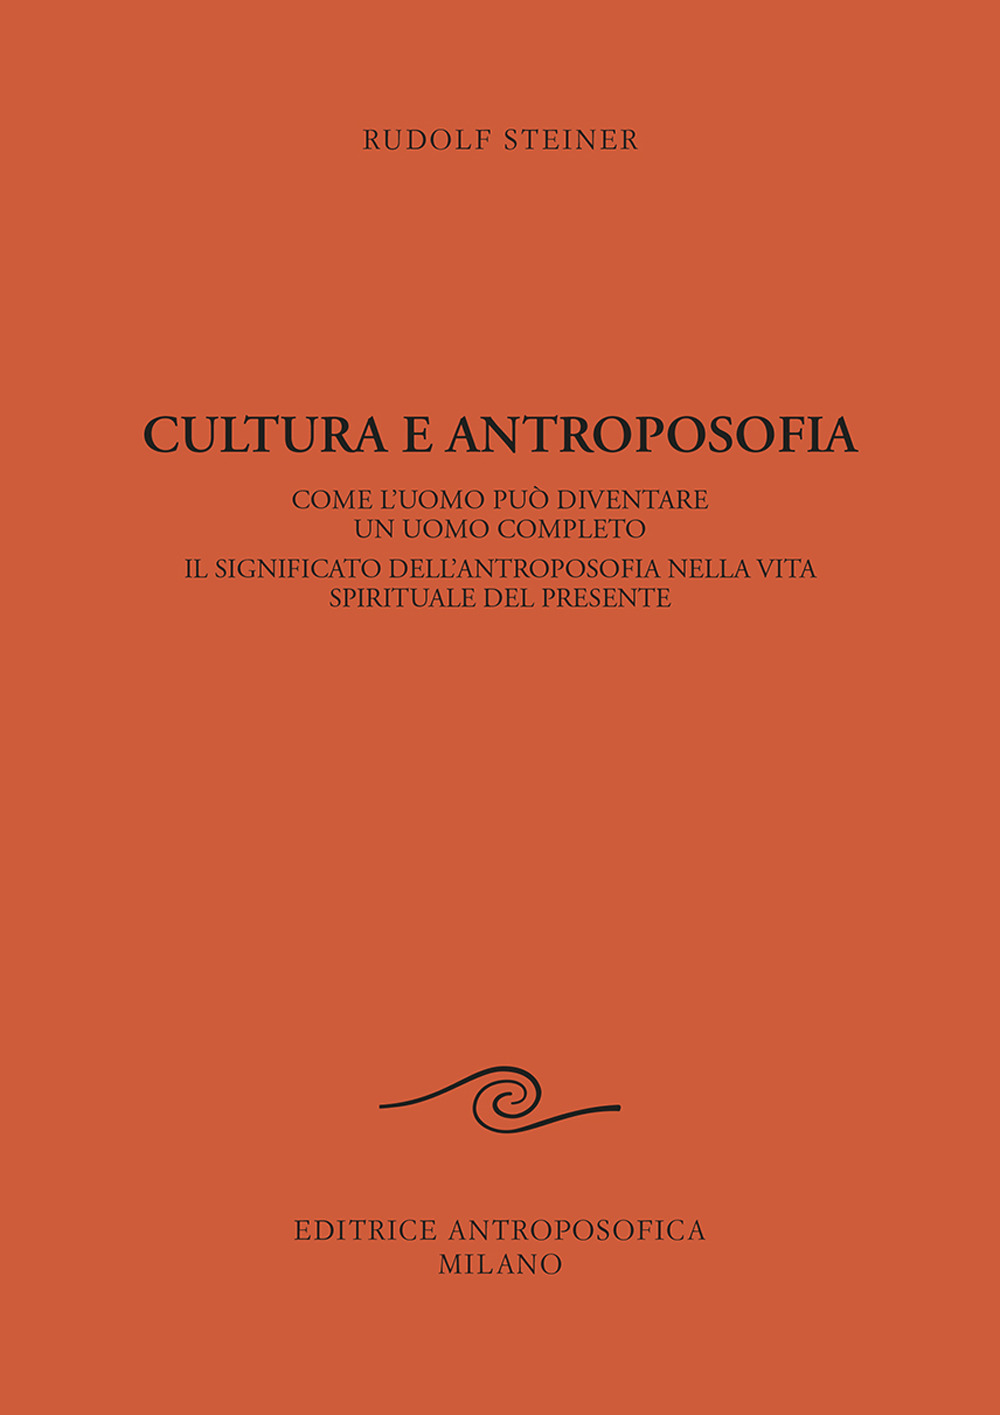 Image of Cultura e antroposofia